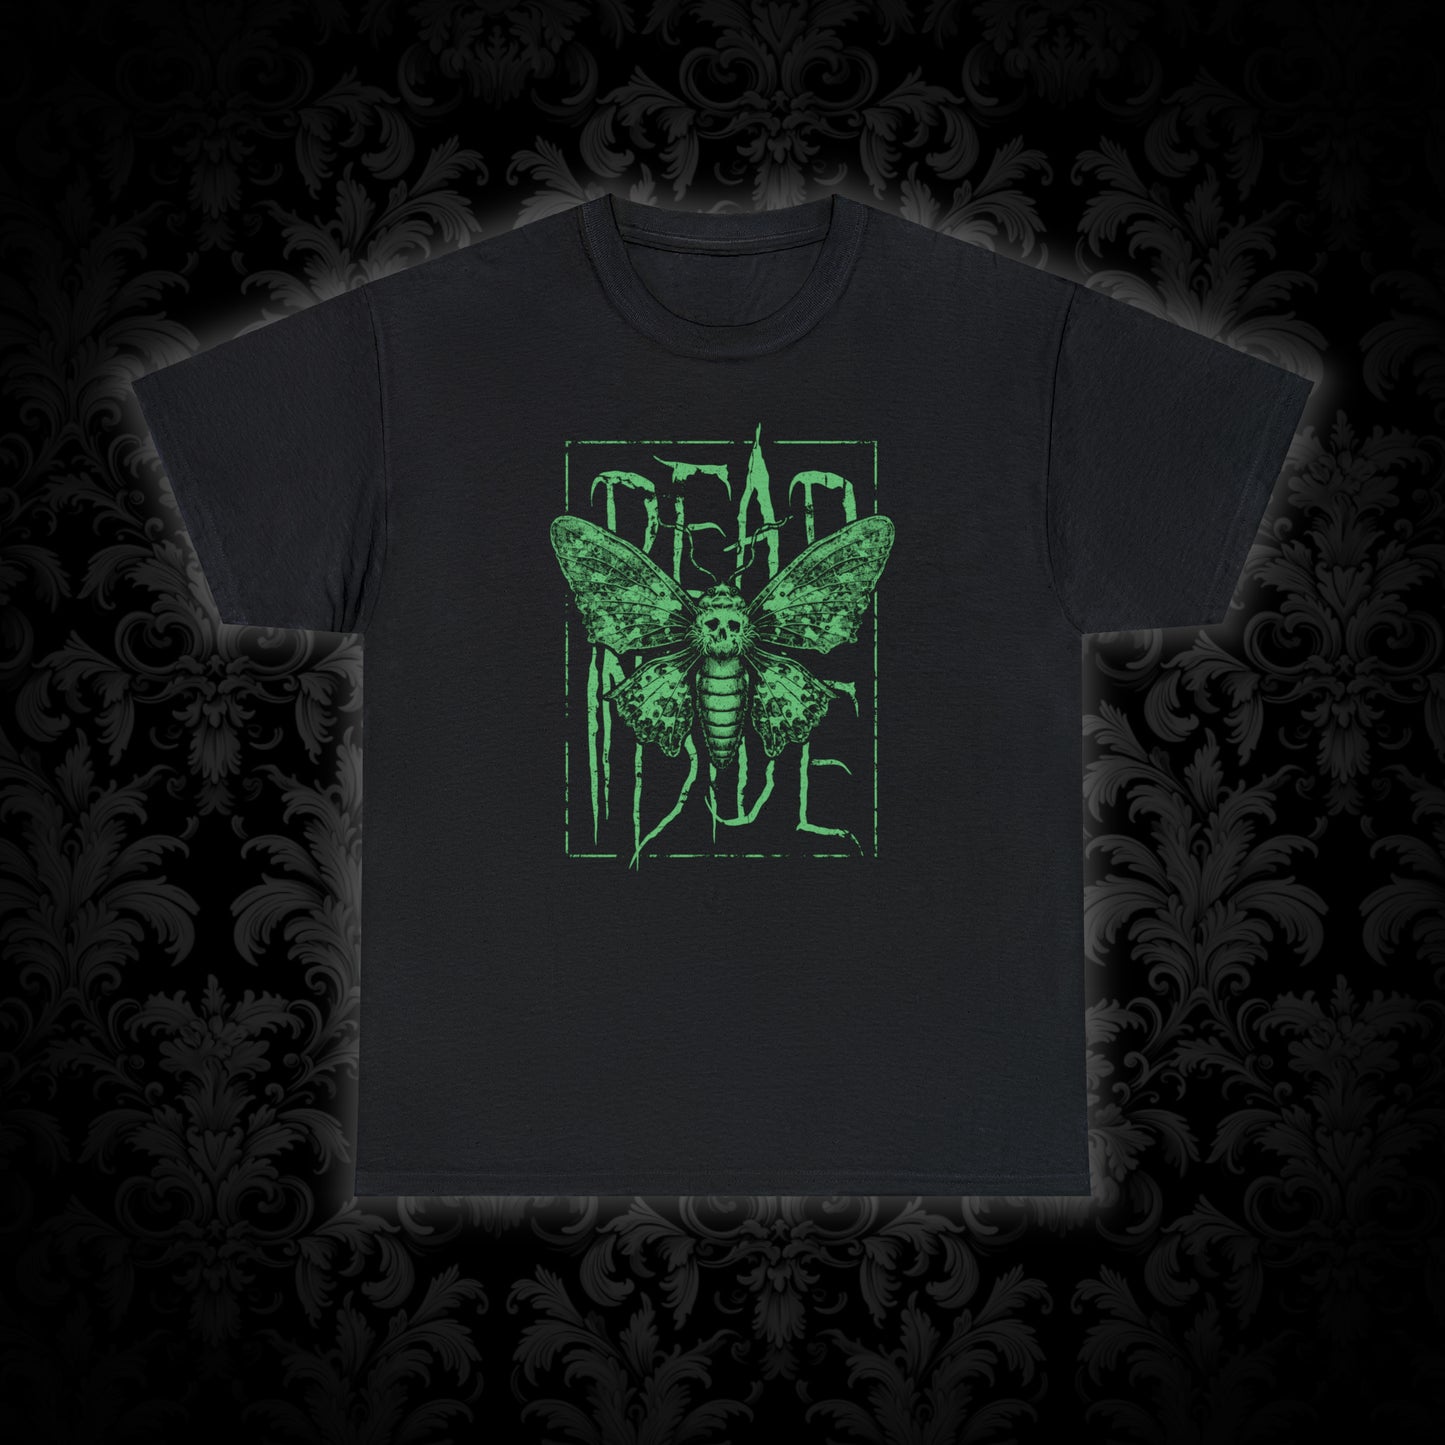 Unisex T-shirt Dead Inside in Green - Frogos Design